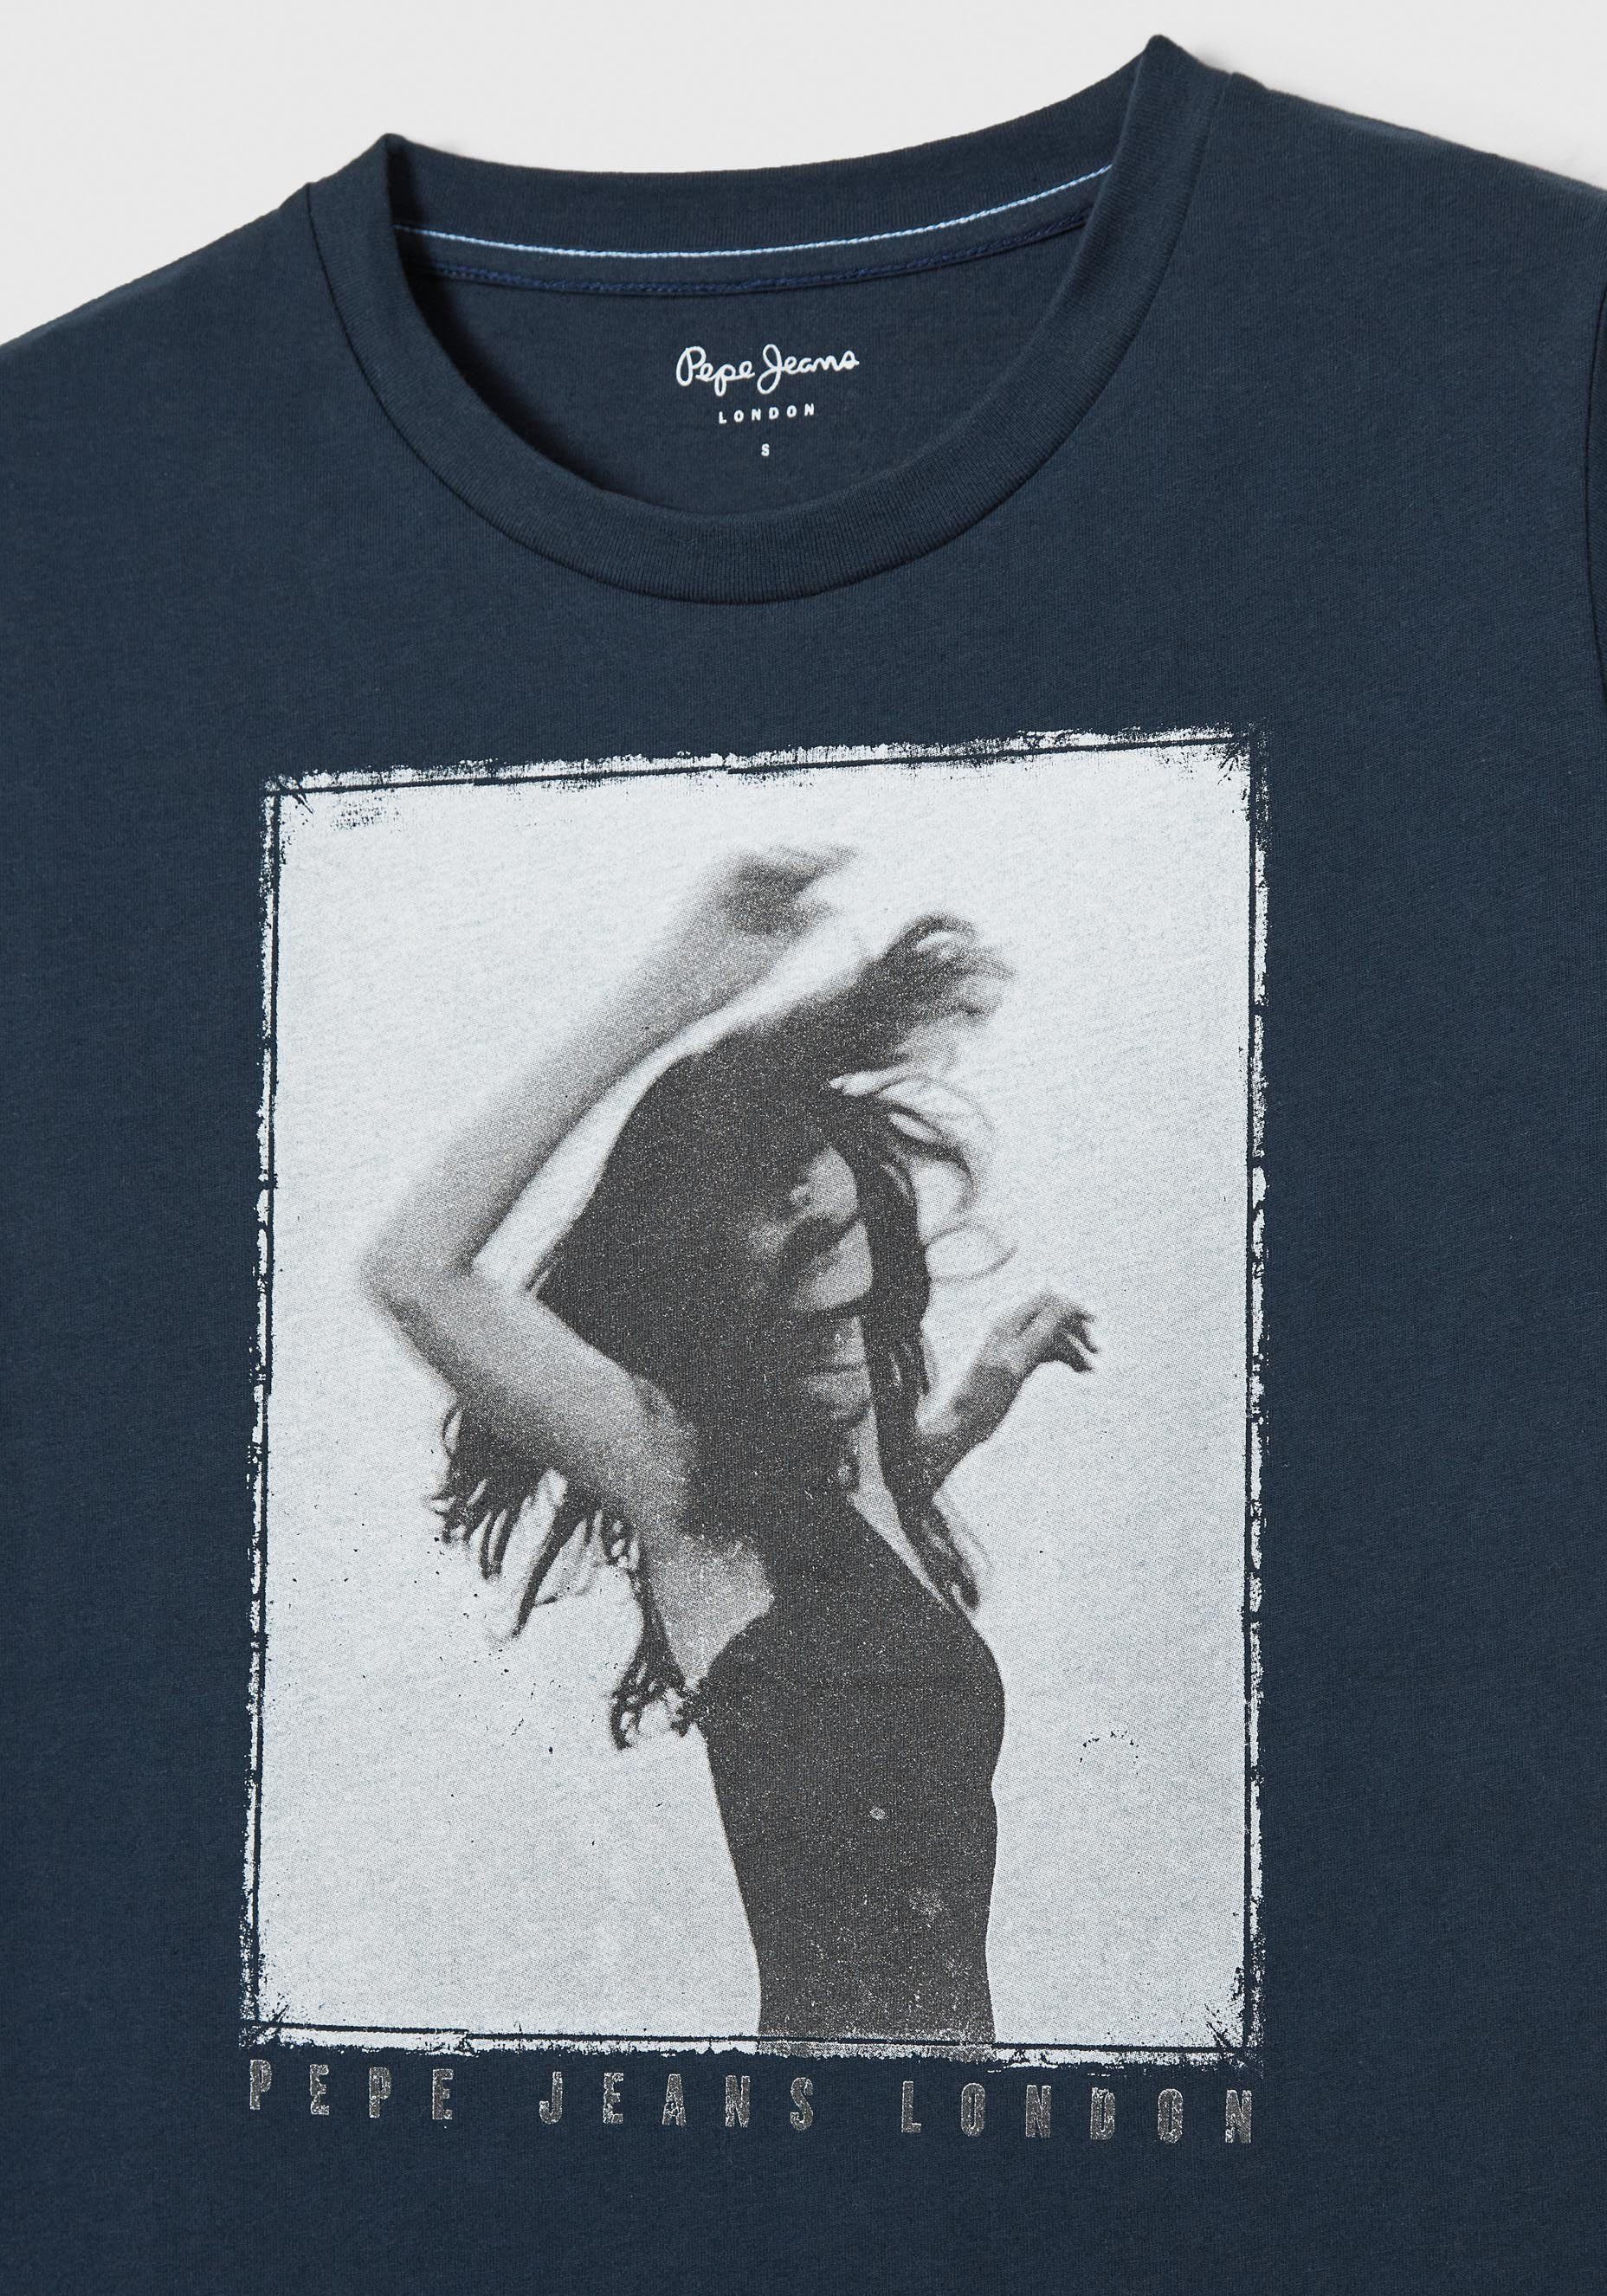 und tollem SONYA mit Frontprint 594DULWICH figurbetonter T-Shirt in markentypischem Passform Jeans Pepe